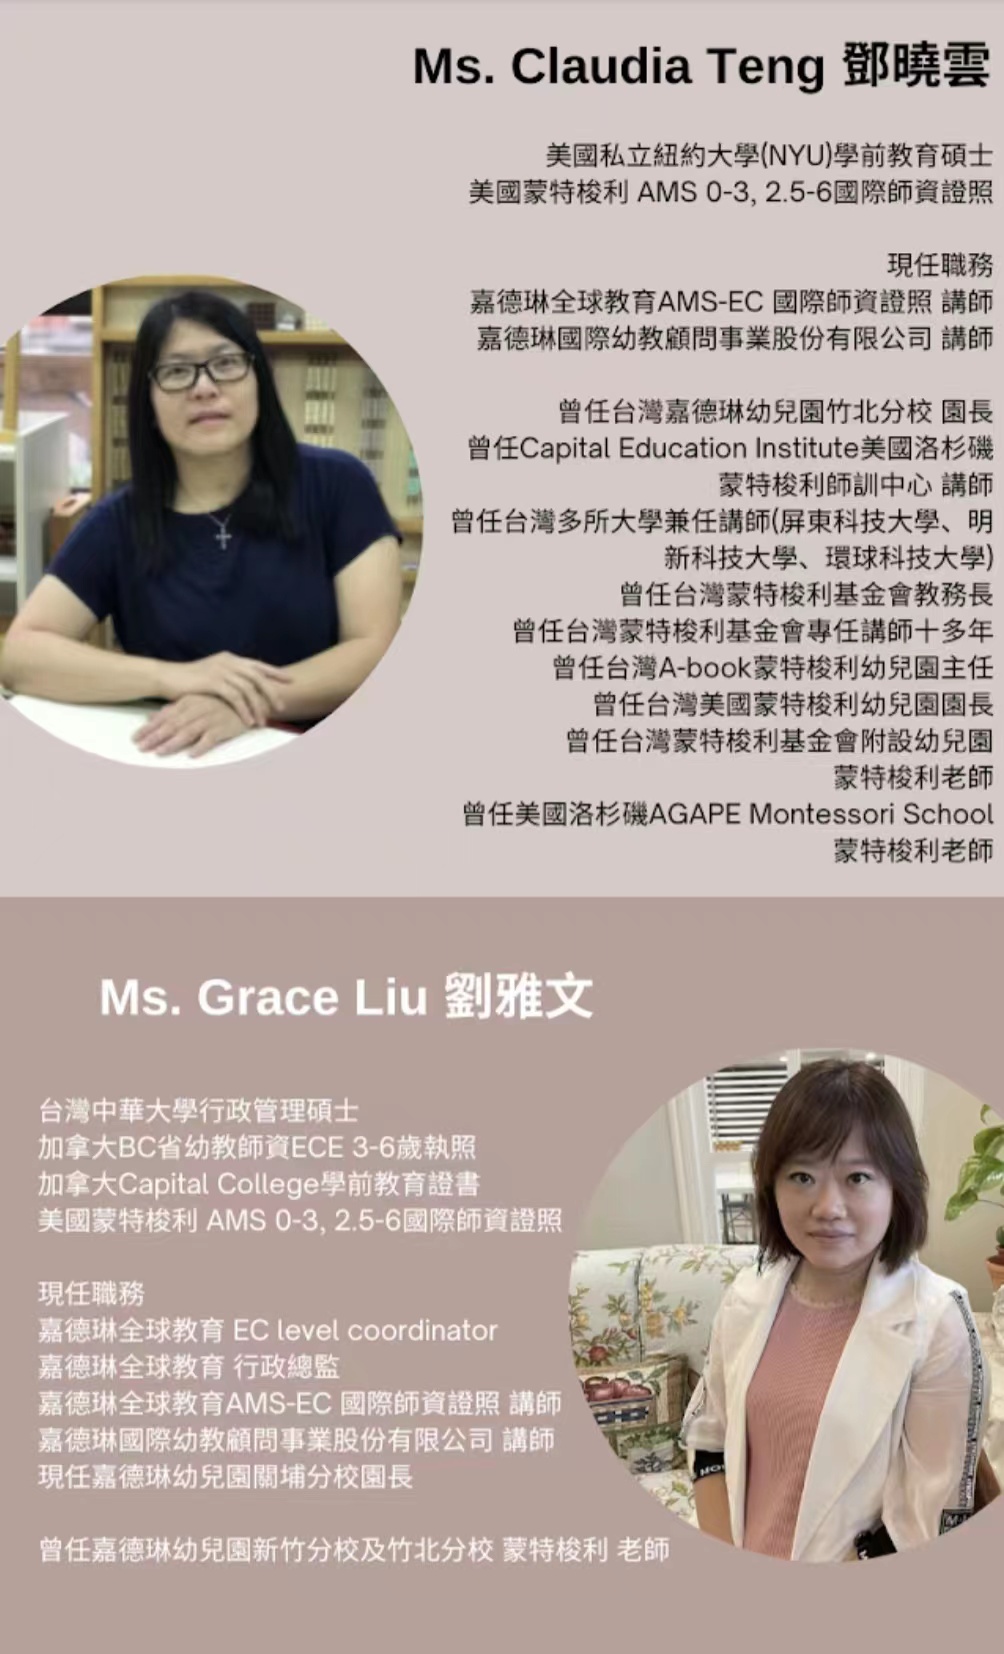 Claudia Teng ; Grace Liu